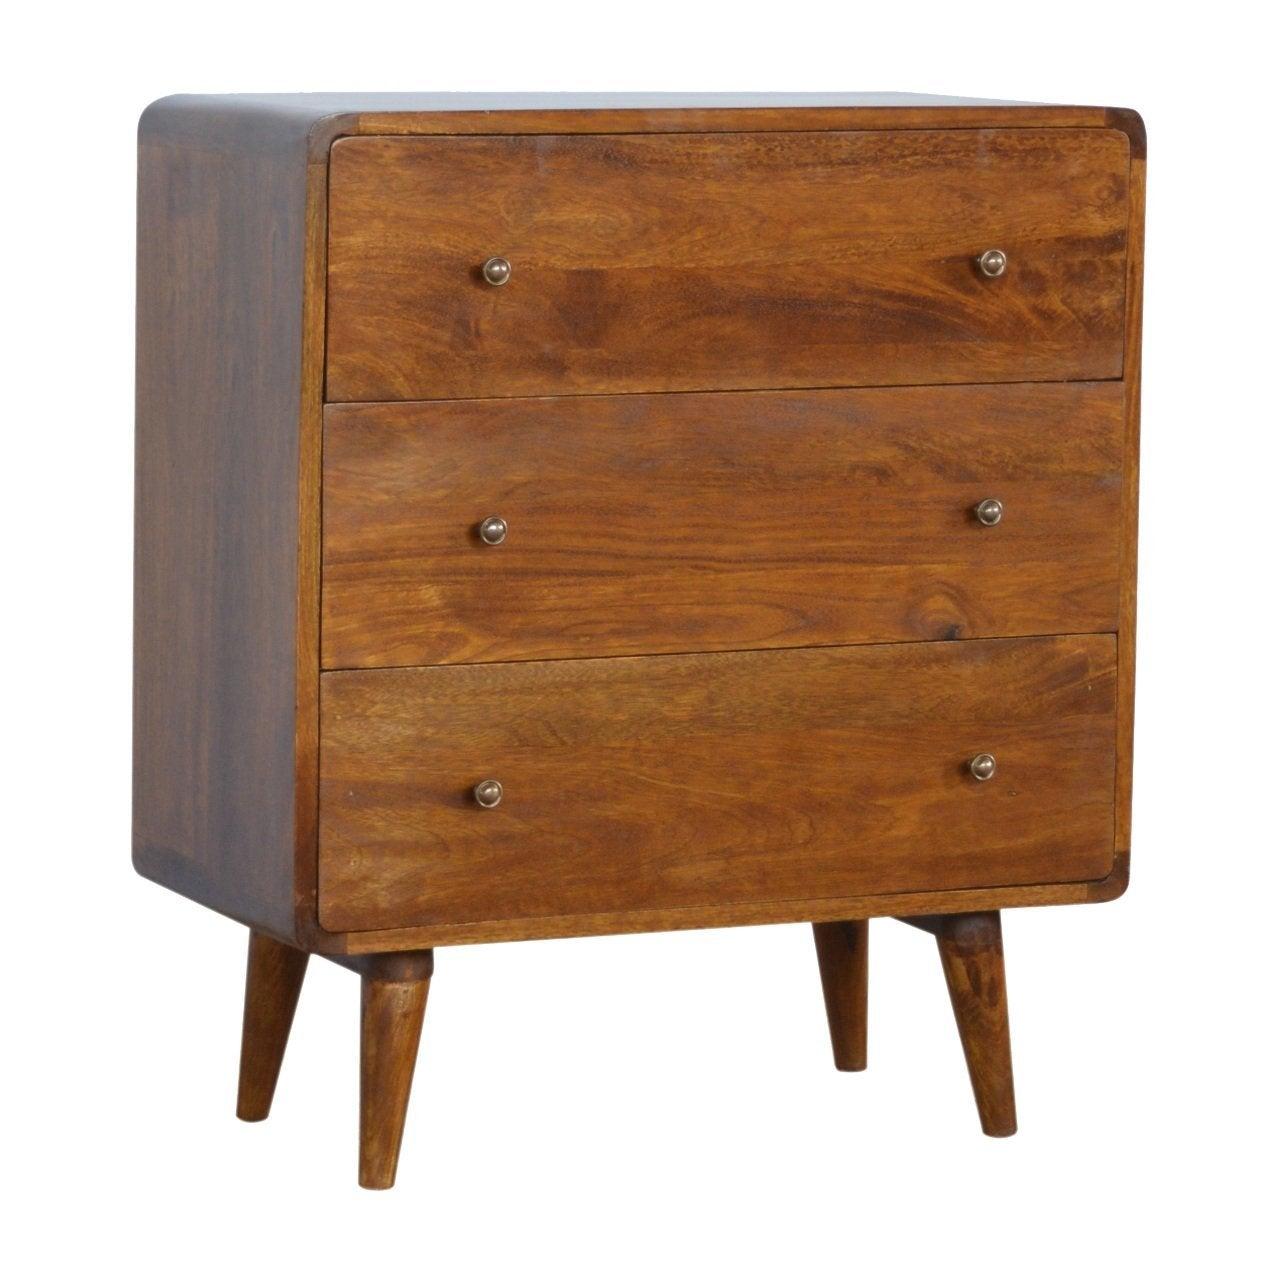 Curved chestnut chest - crimblefest furniture - image 3